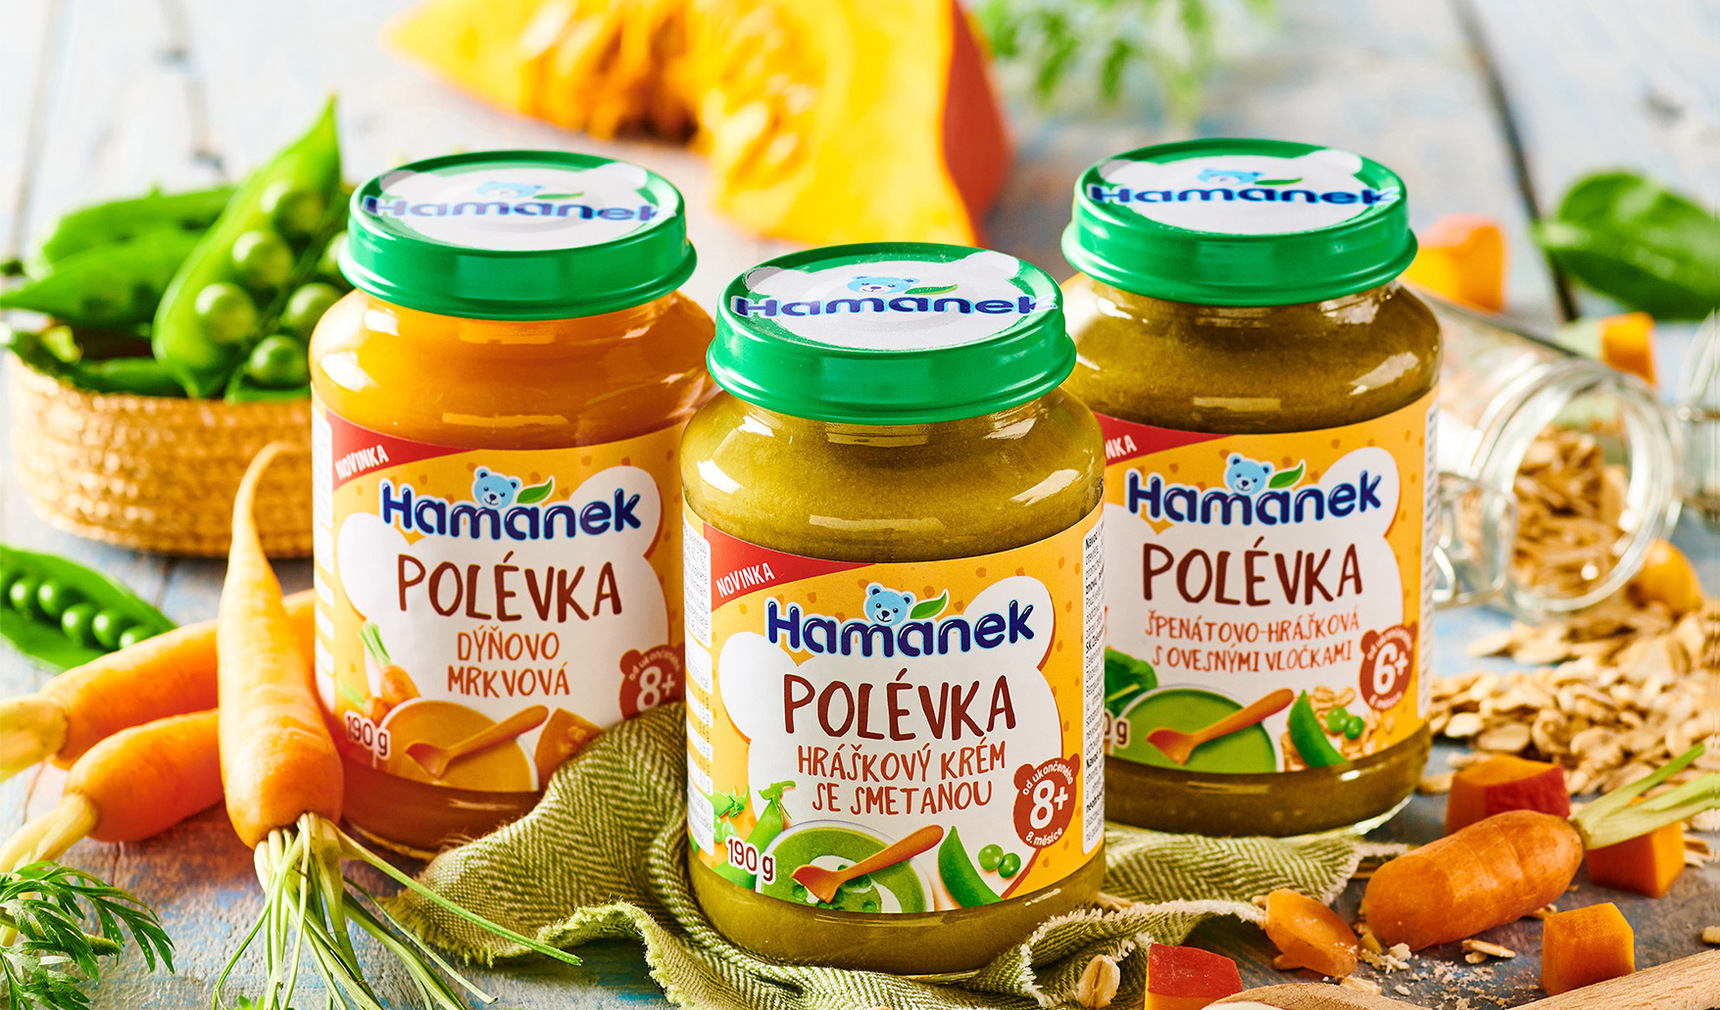 Hamánek presents new products